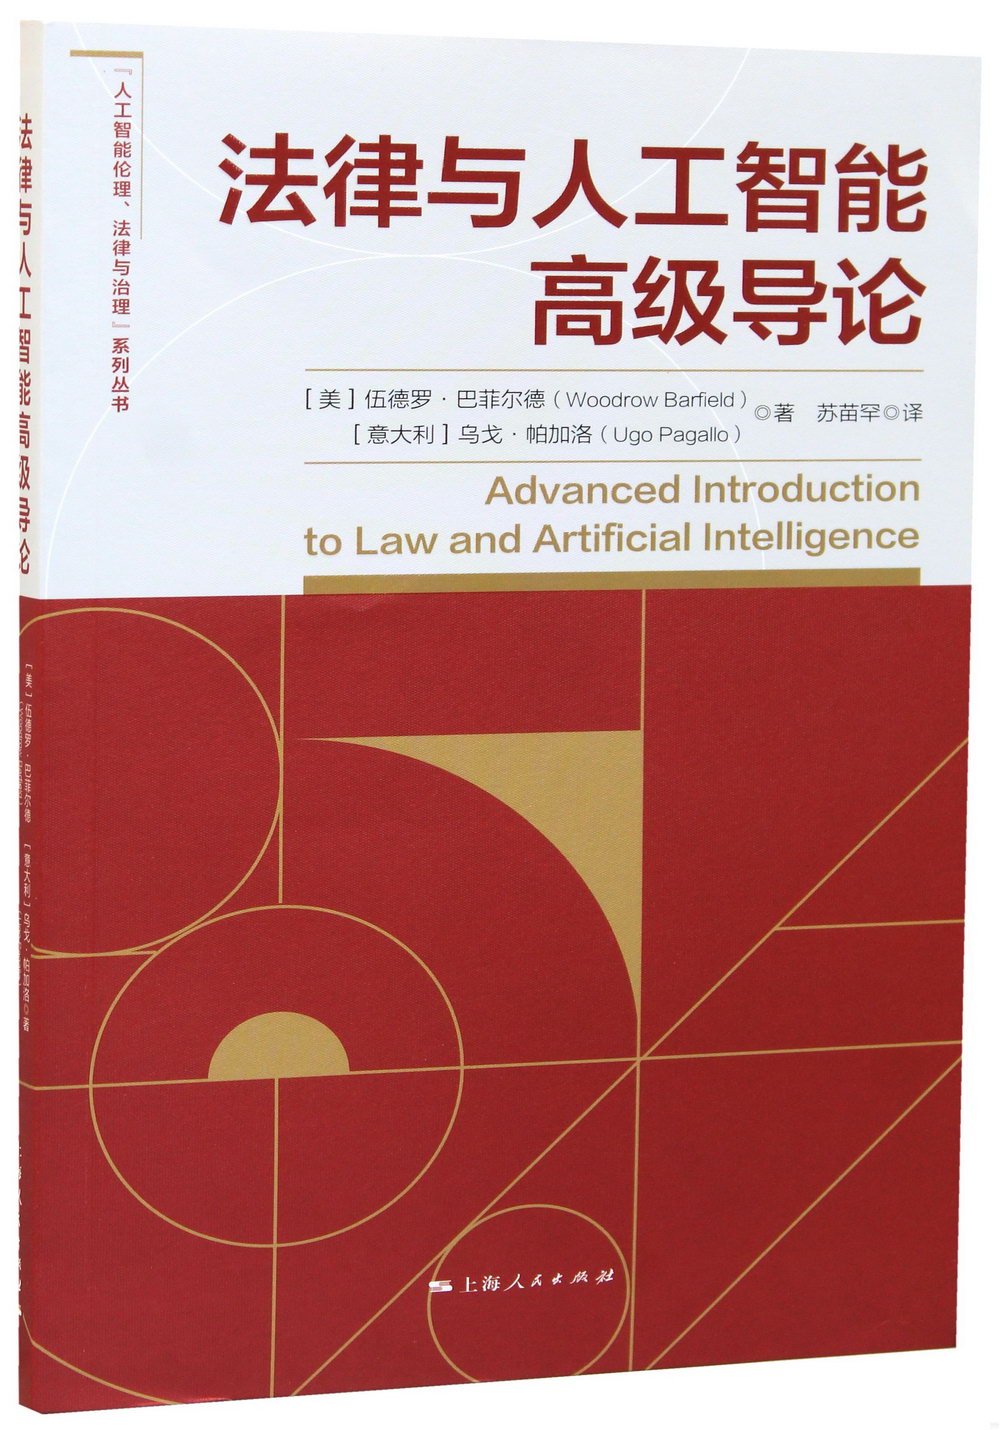 法律與人工智能高級導論